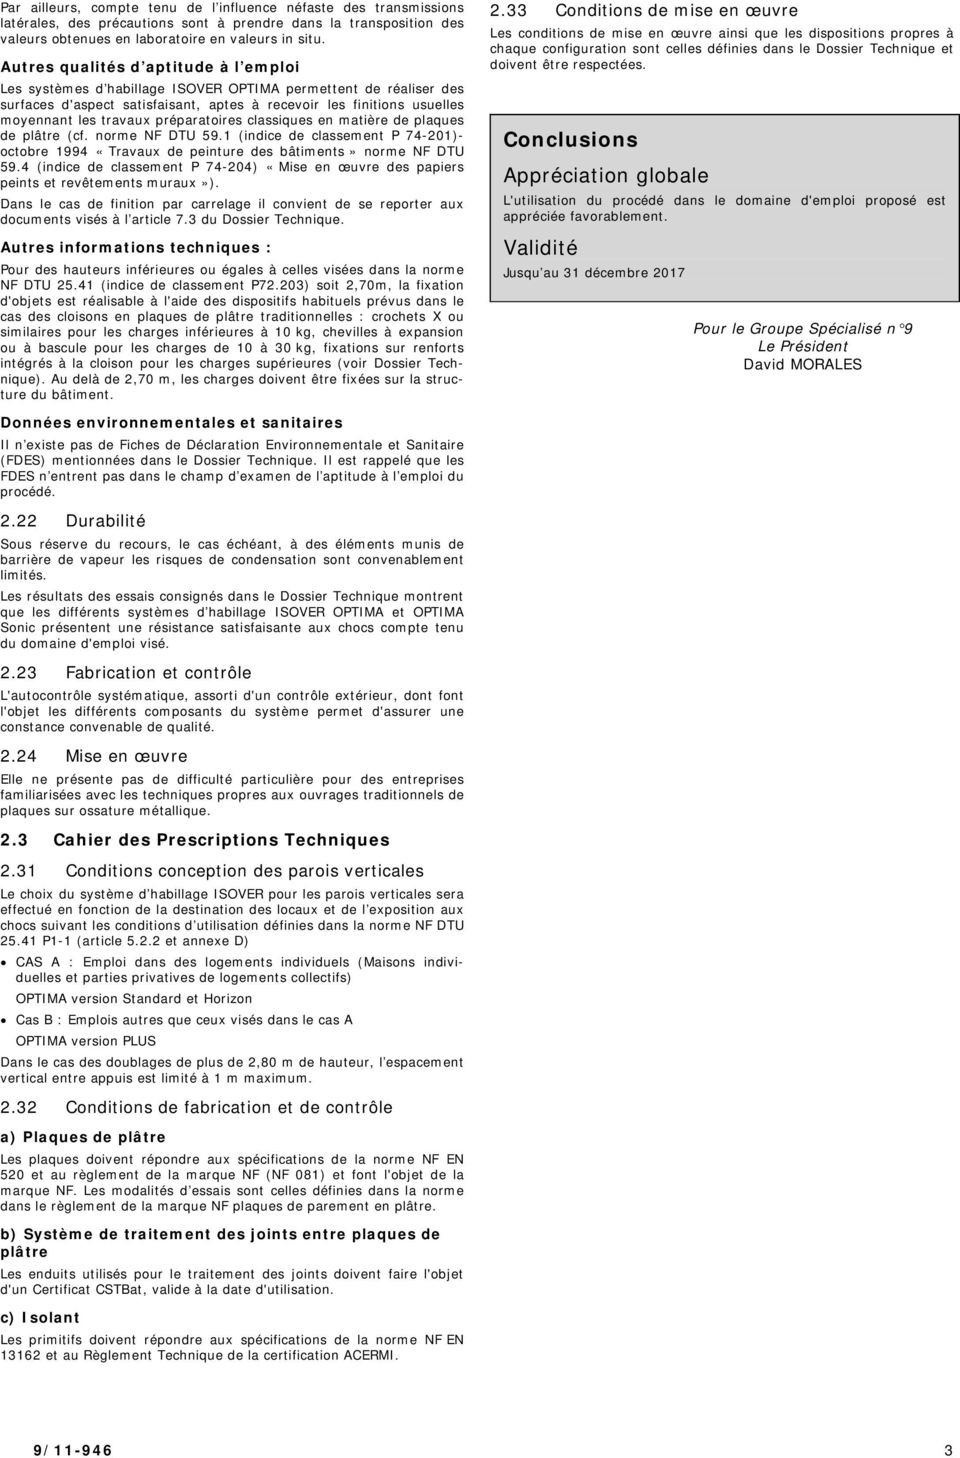 préparatoires classiques en matière de plaques de plâtre (cf. norme NF DTU 59.1 (indice de classement P 74-201)- octobre 1994 «Travaux de peinture des bâtiments» norme NF DTU 59.